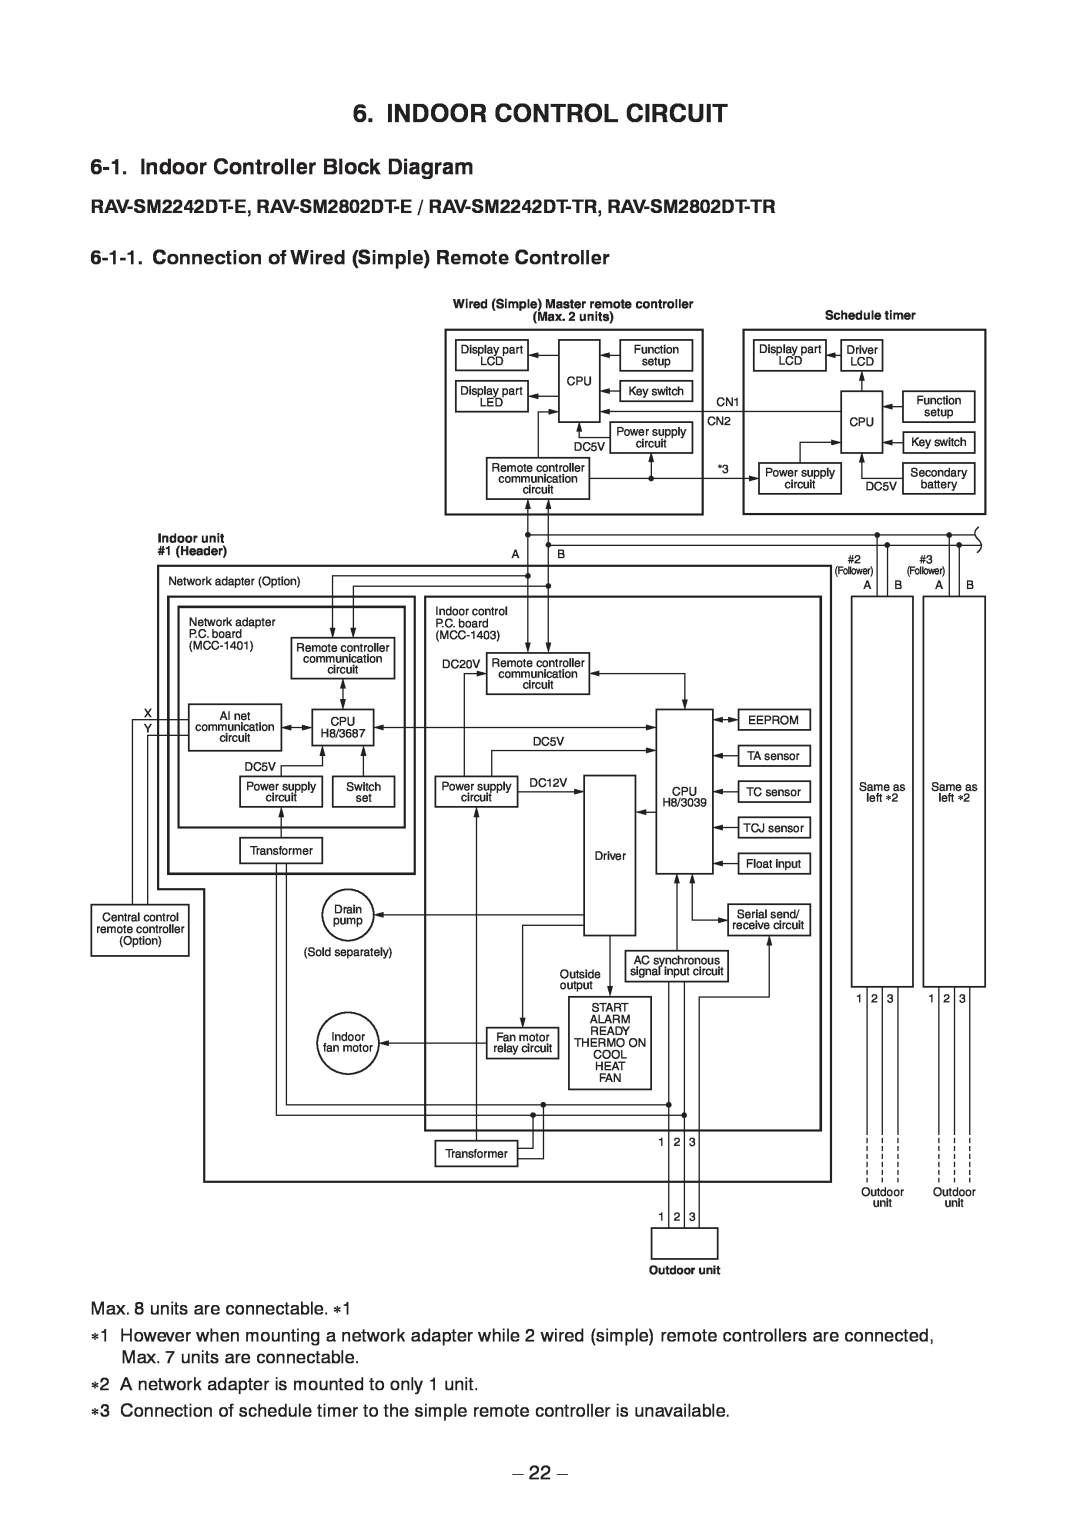 Toshiba RAV-SM2242DT-TR Indoor Control Circuit, Indoor Controller Block Diagram, Indoor unit, #1 Header, Outdoor unit 